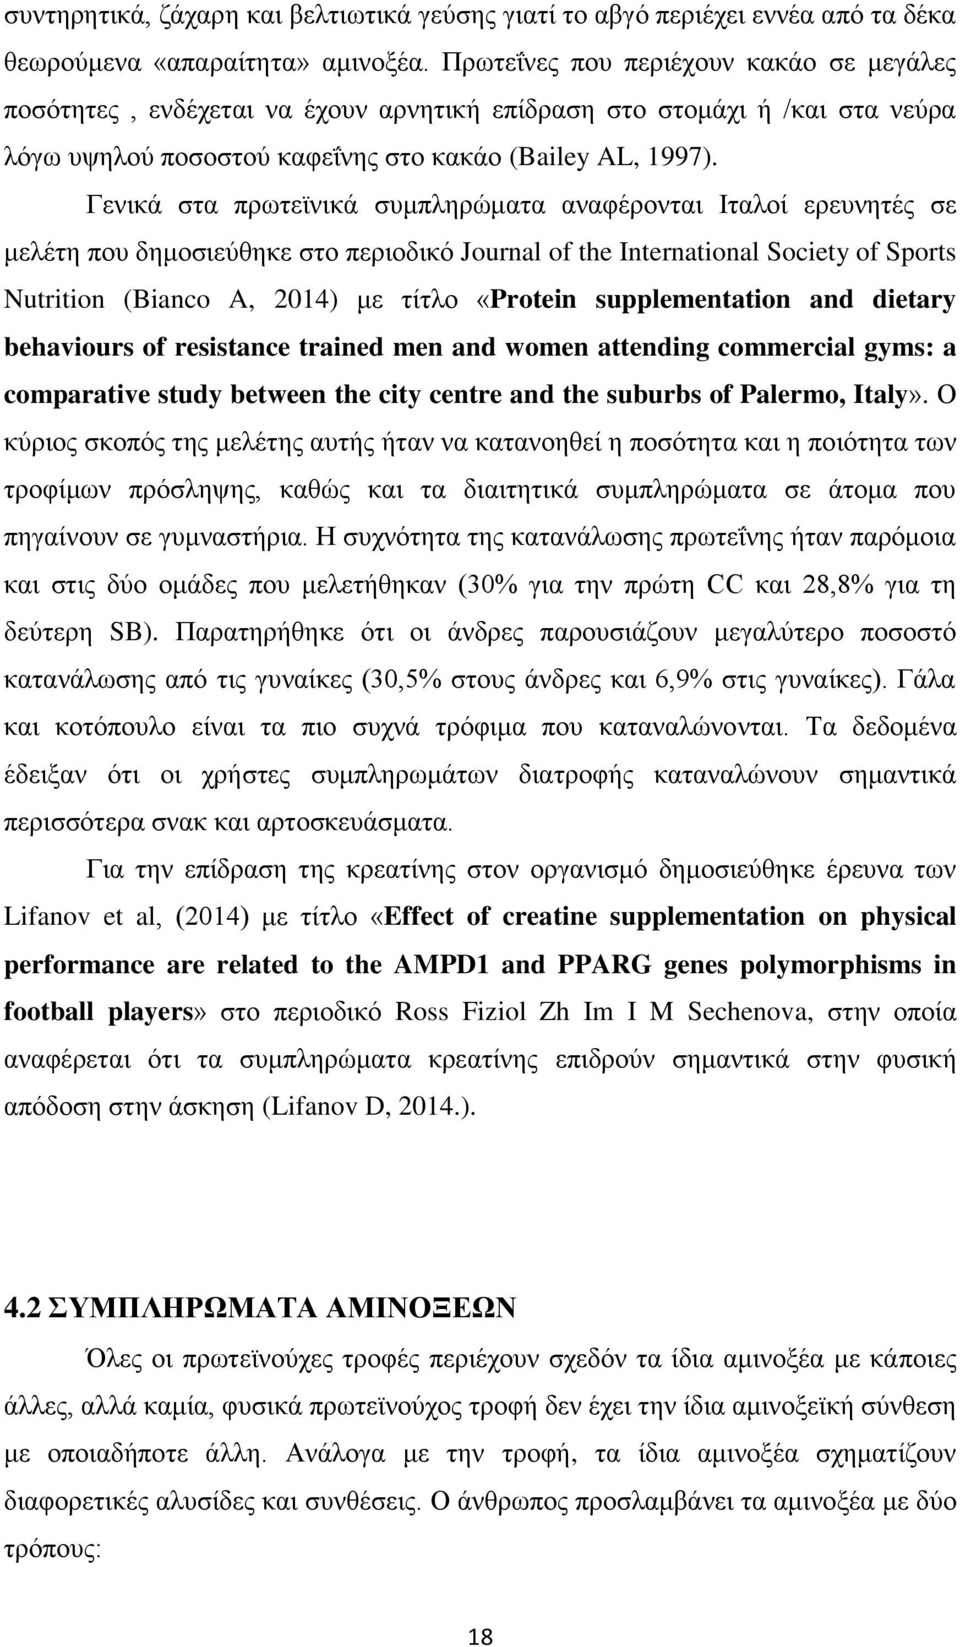 Γενικά στα πρωτεϊνικά συμπληρώματα αναφέρονται Ιταλοί ερευνητές σε μελέτη που δημοσιεύθηκε στο περιοδικό Journal of the International Society of Sports Nutrition (Bianco A, 2014) με τίτλο «Protein